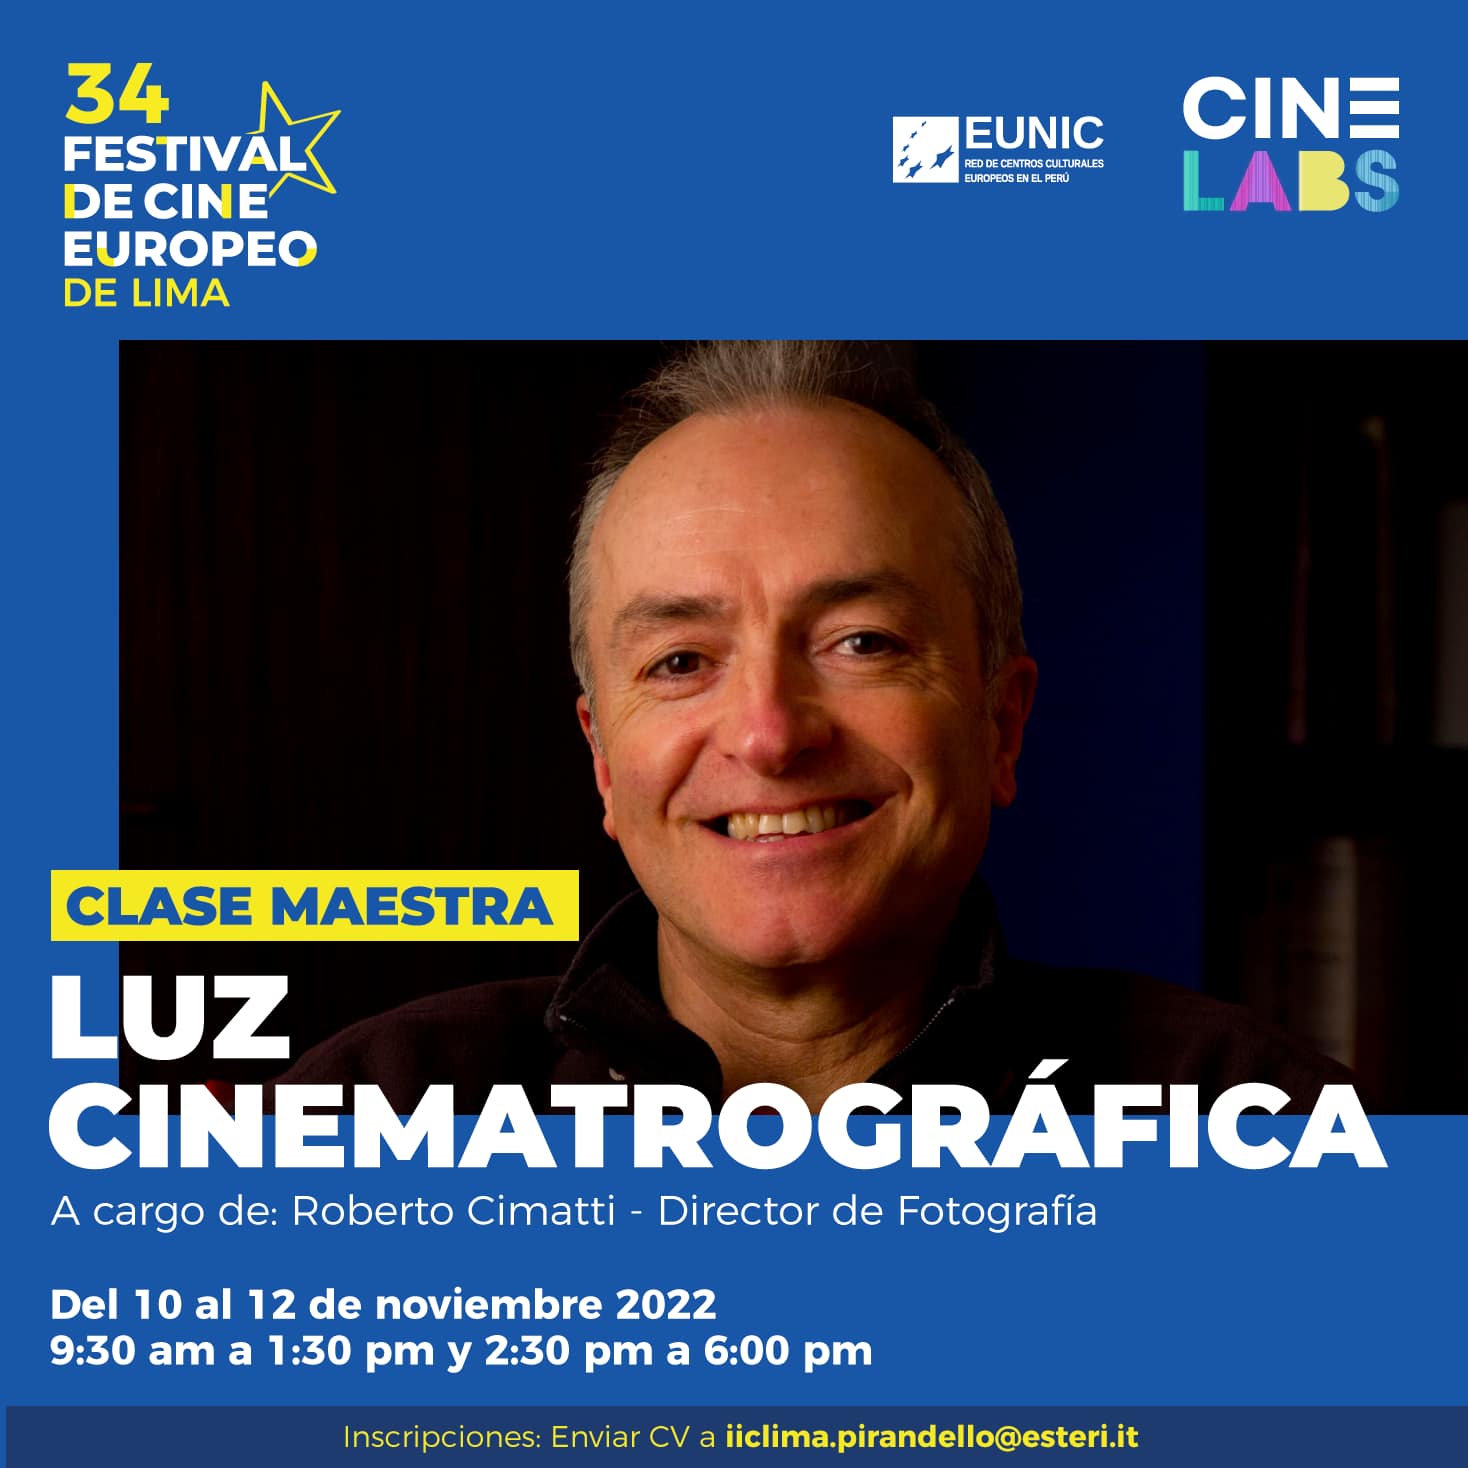 Foto de Festival de Cine Europeo de Lima en el Instituto Italiano de Cultura